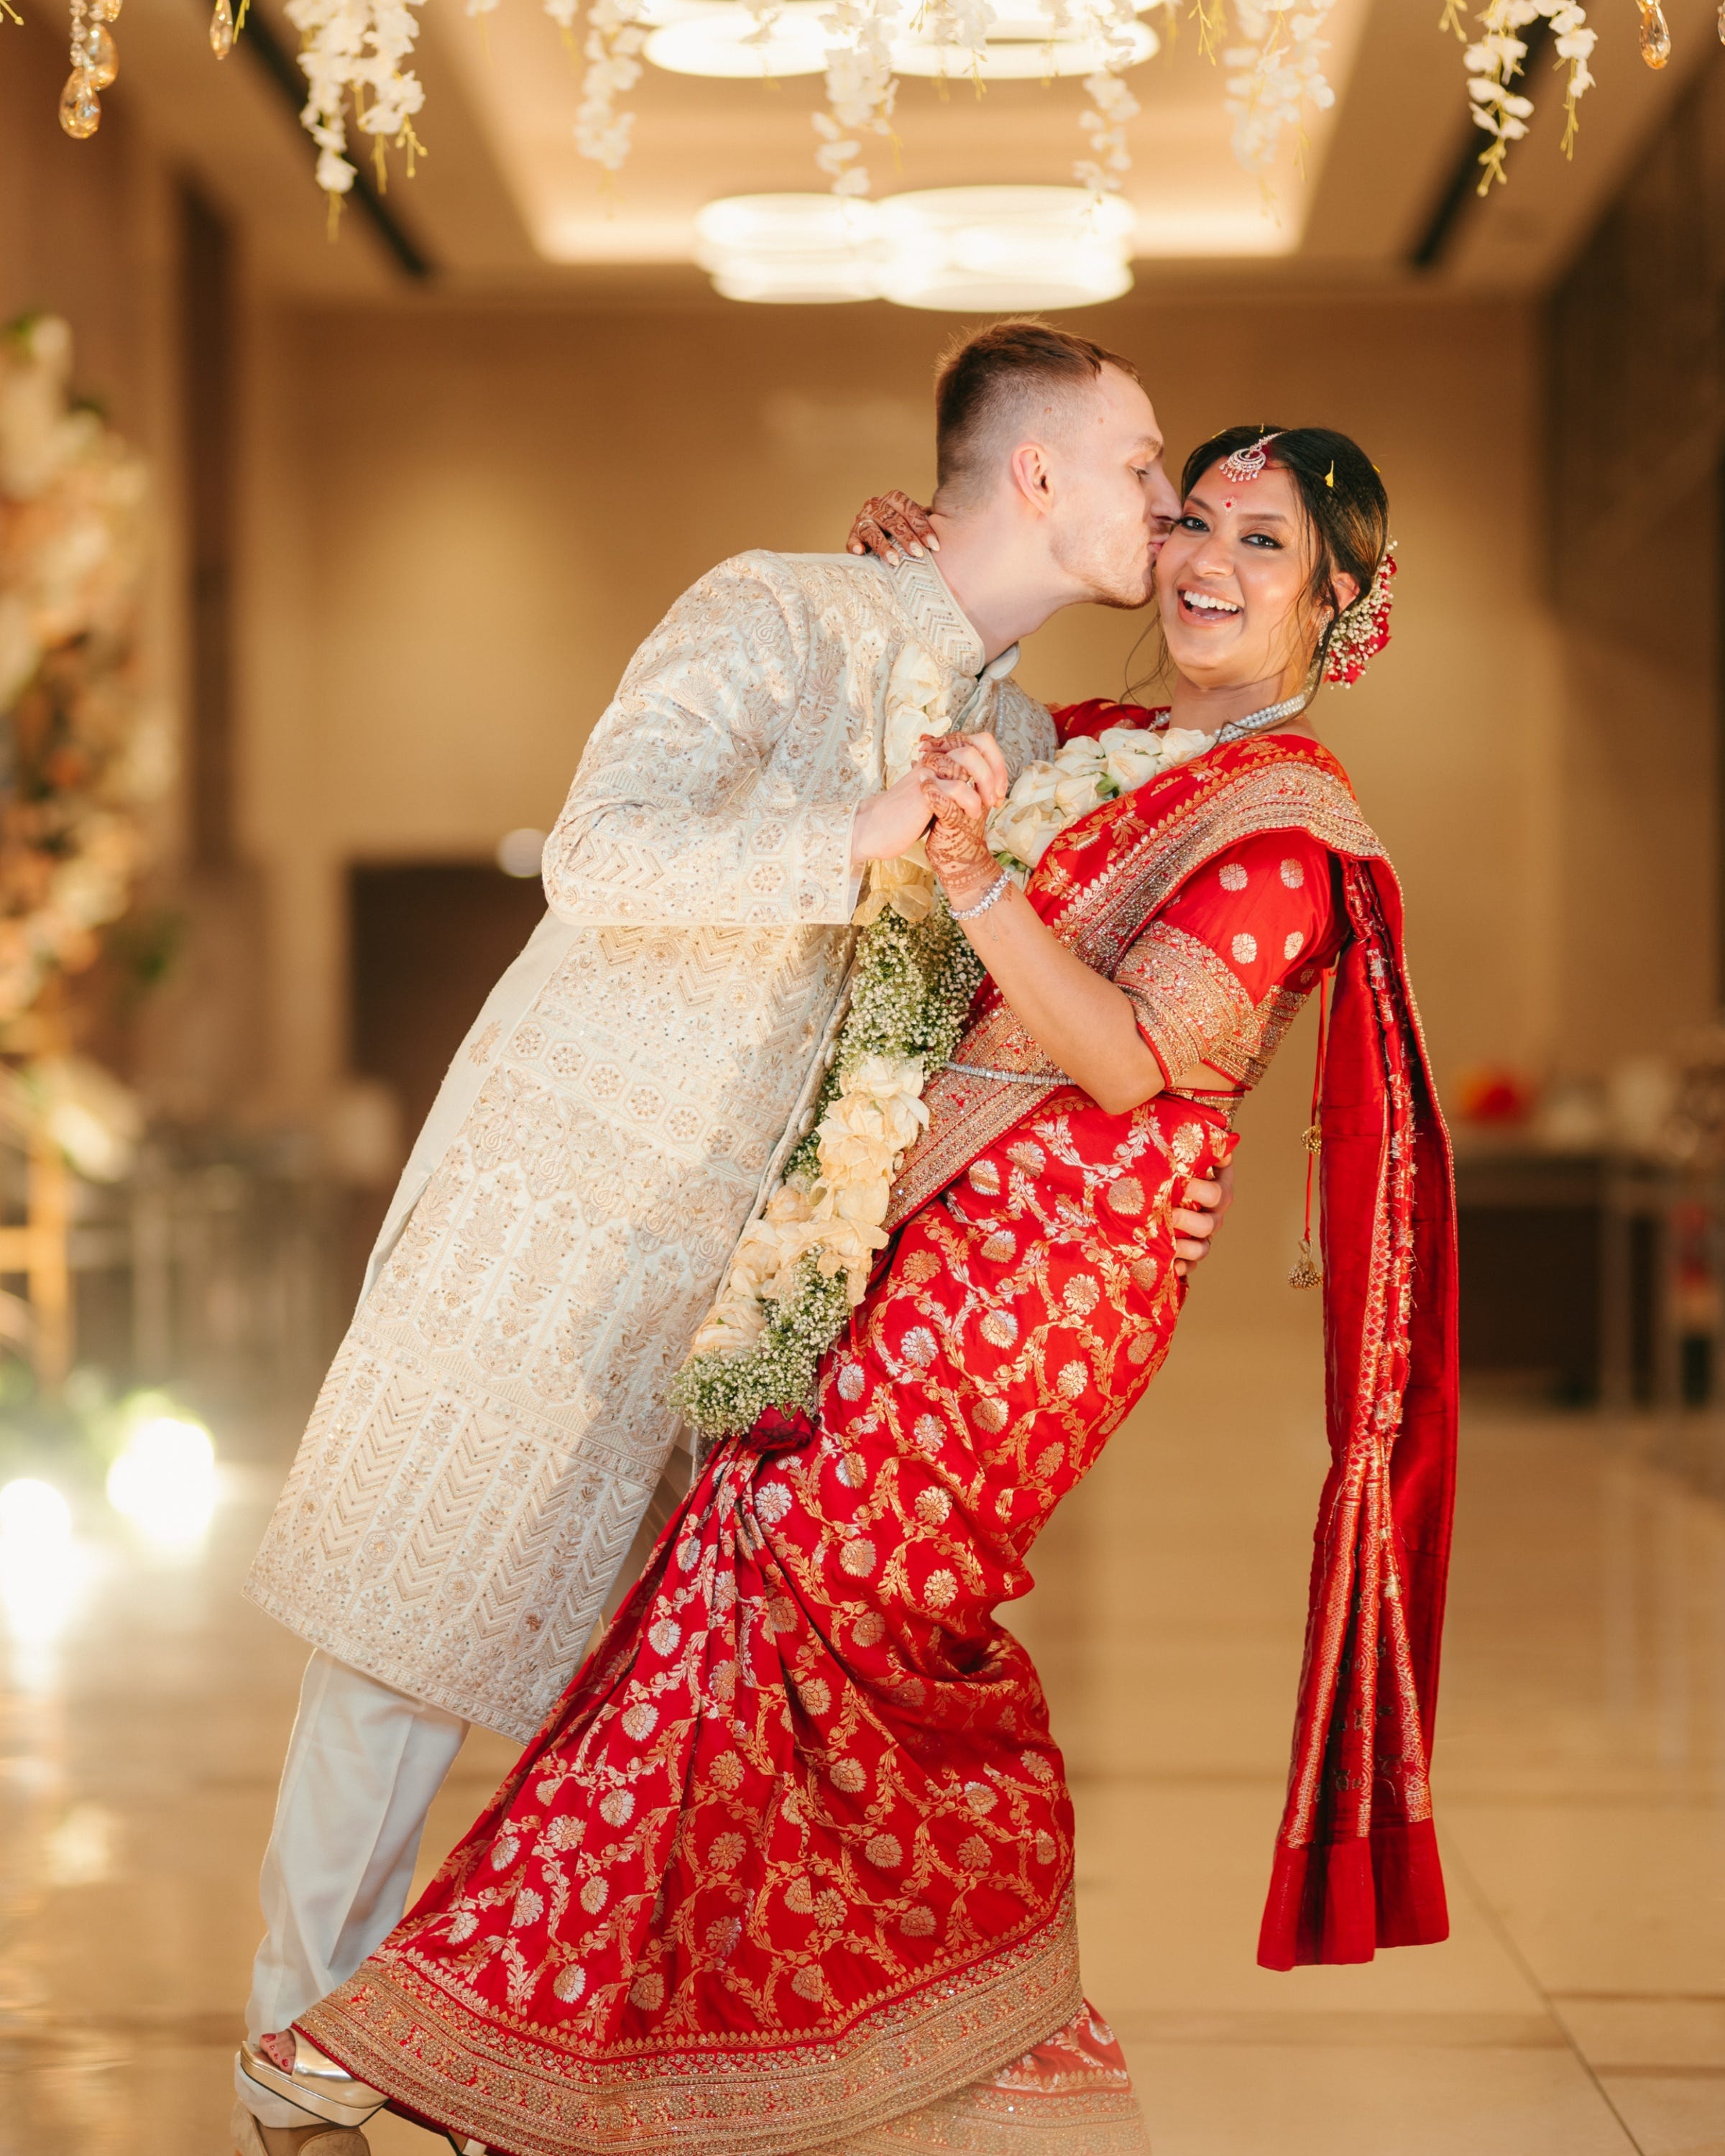 Kovalonoks küssen Goswami während ihrer Hochzeitsfeier in Kalkutta, Indien, auf die Wange.